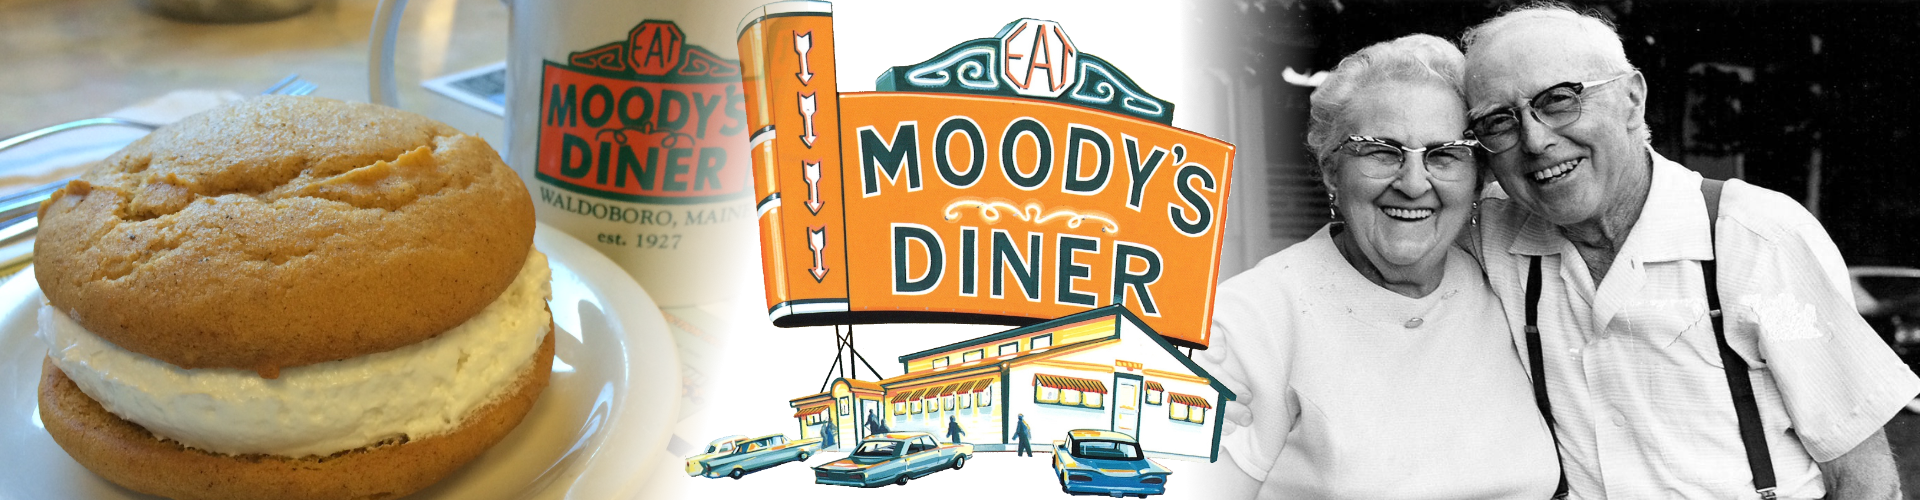 Moody's Diner Menu